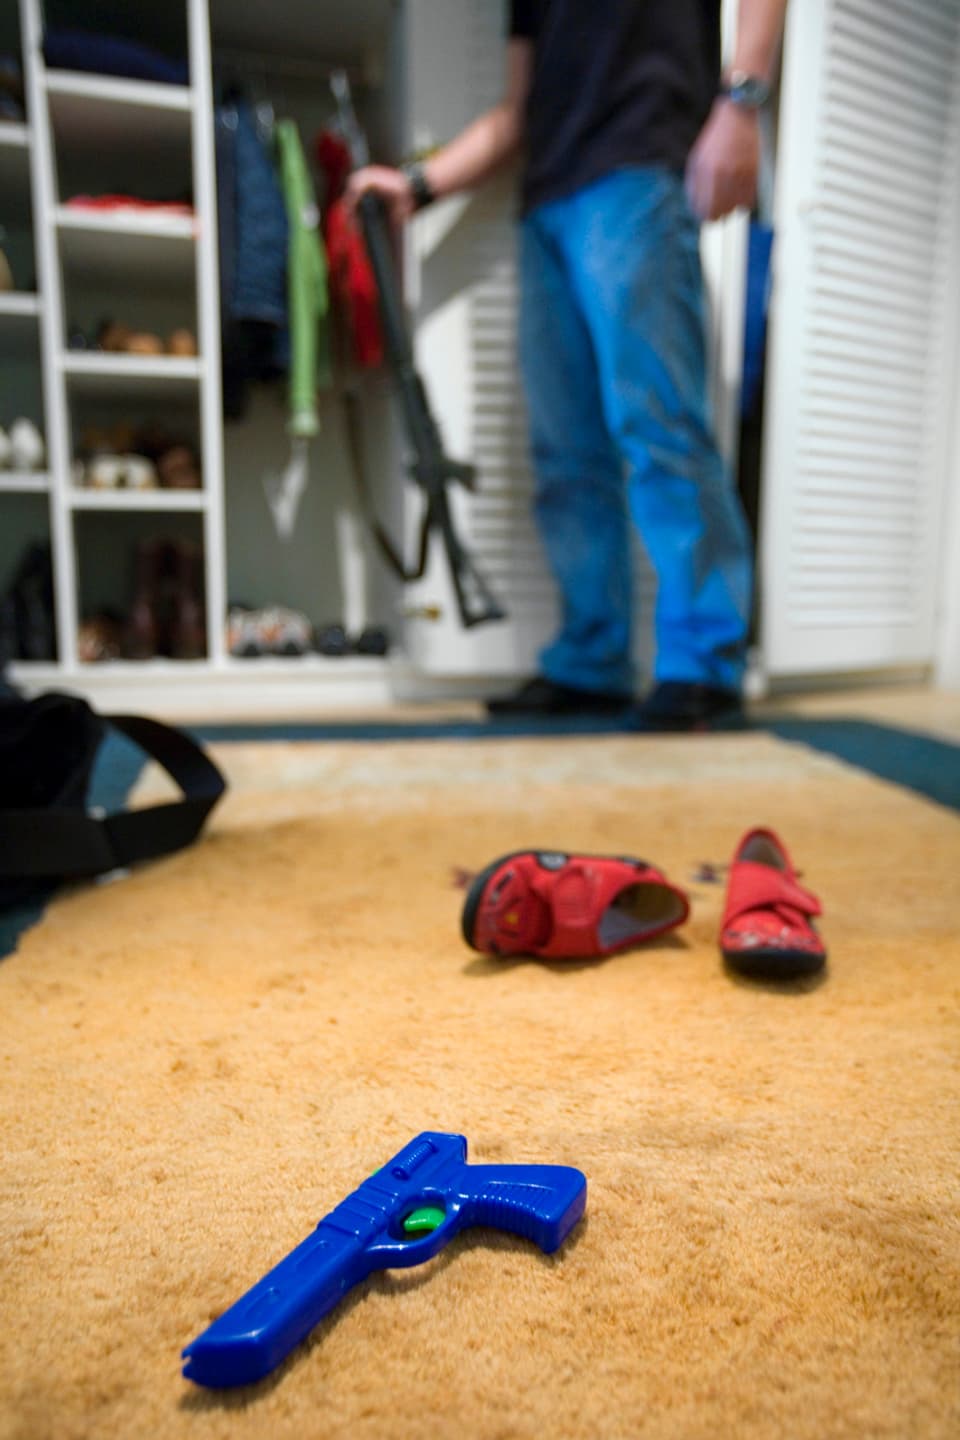 Ein Mann stellt sein Sturmgewehr in den Kleiderschrank, im Vordergrund liegen Kinderschuhe und eine Spielzeugpistole (2006).